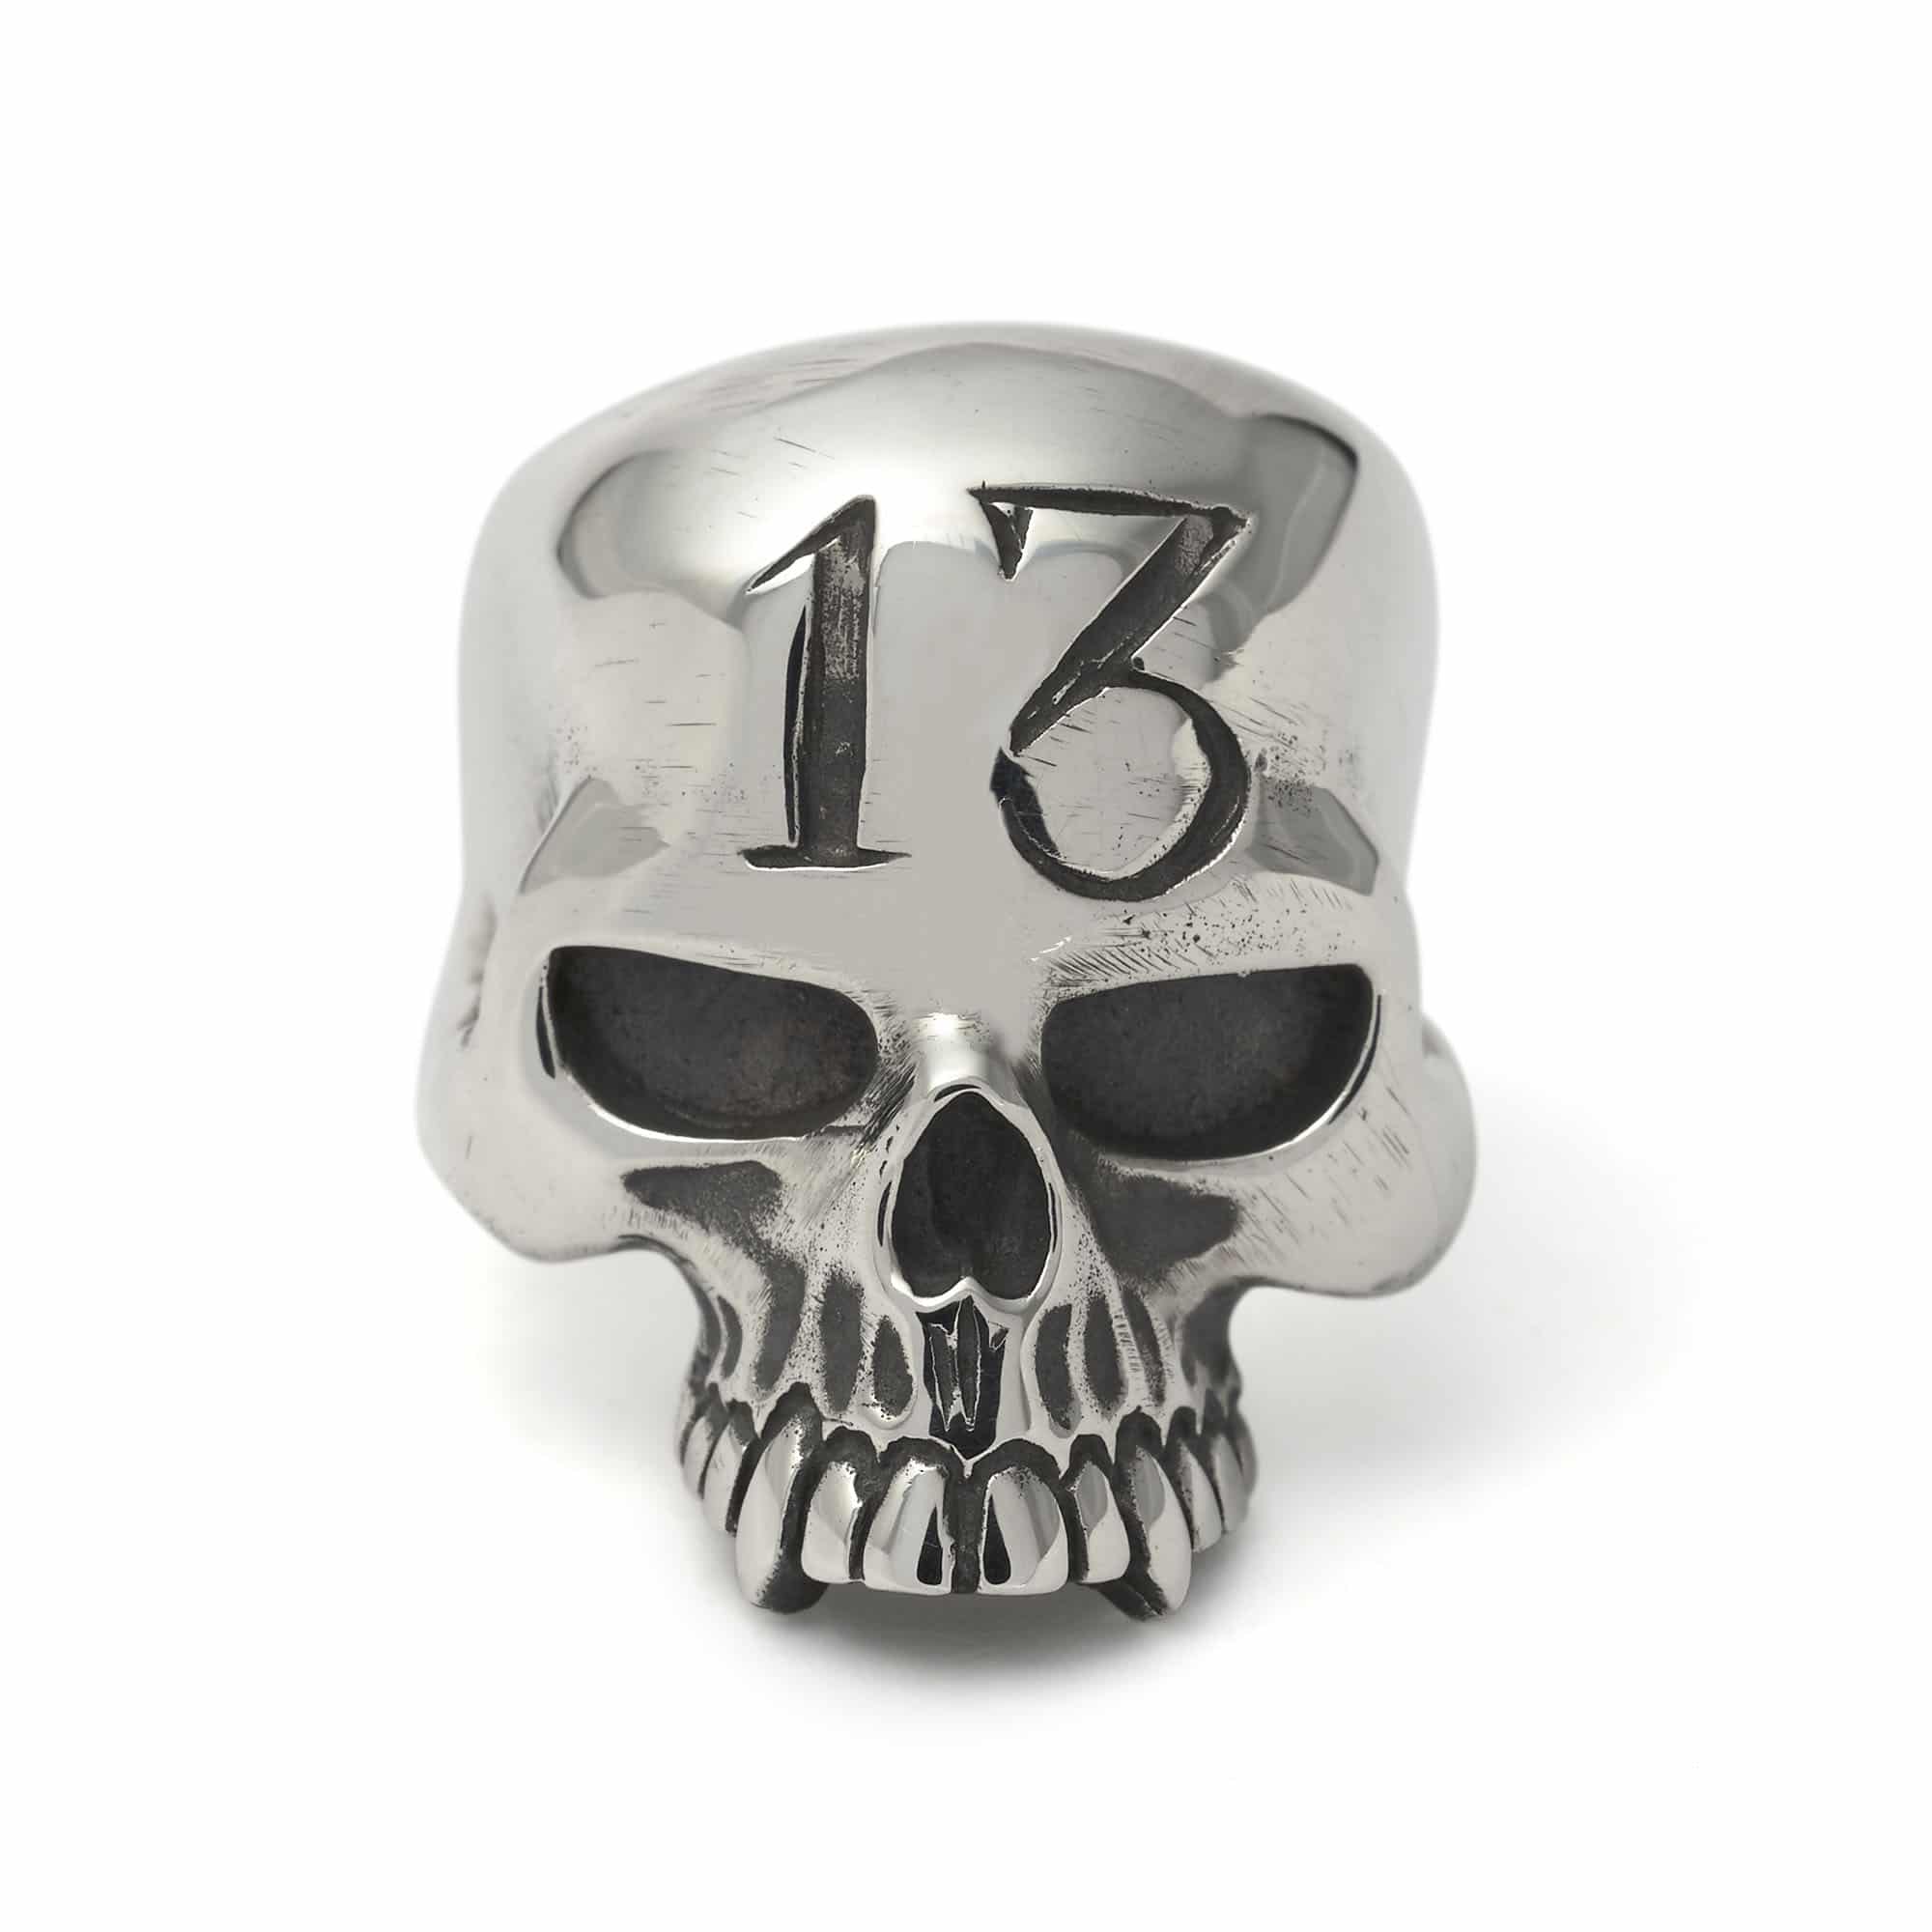 13-evil-skull-ring-front.jpg